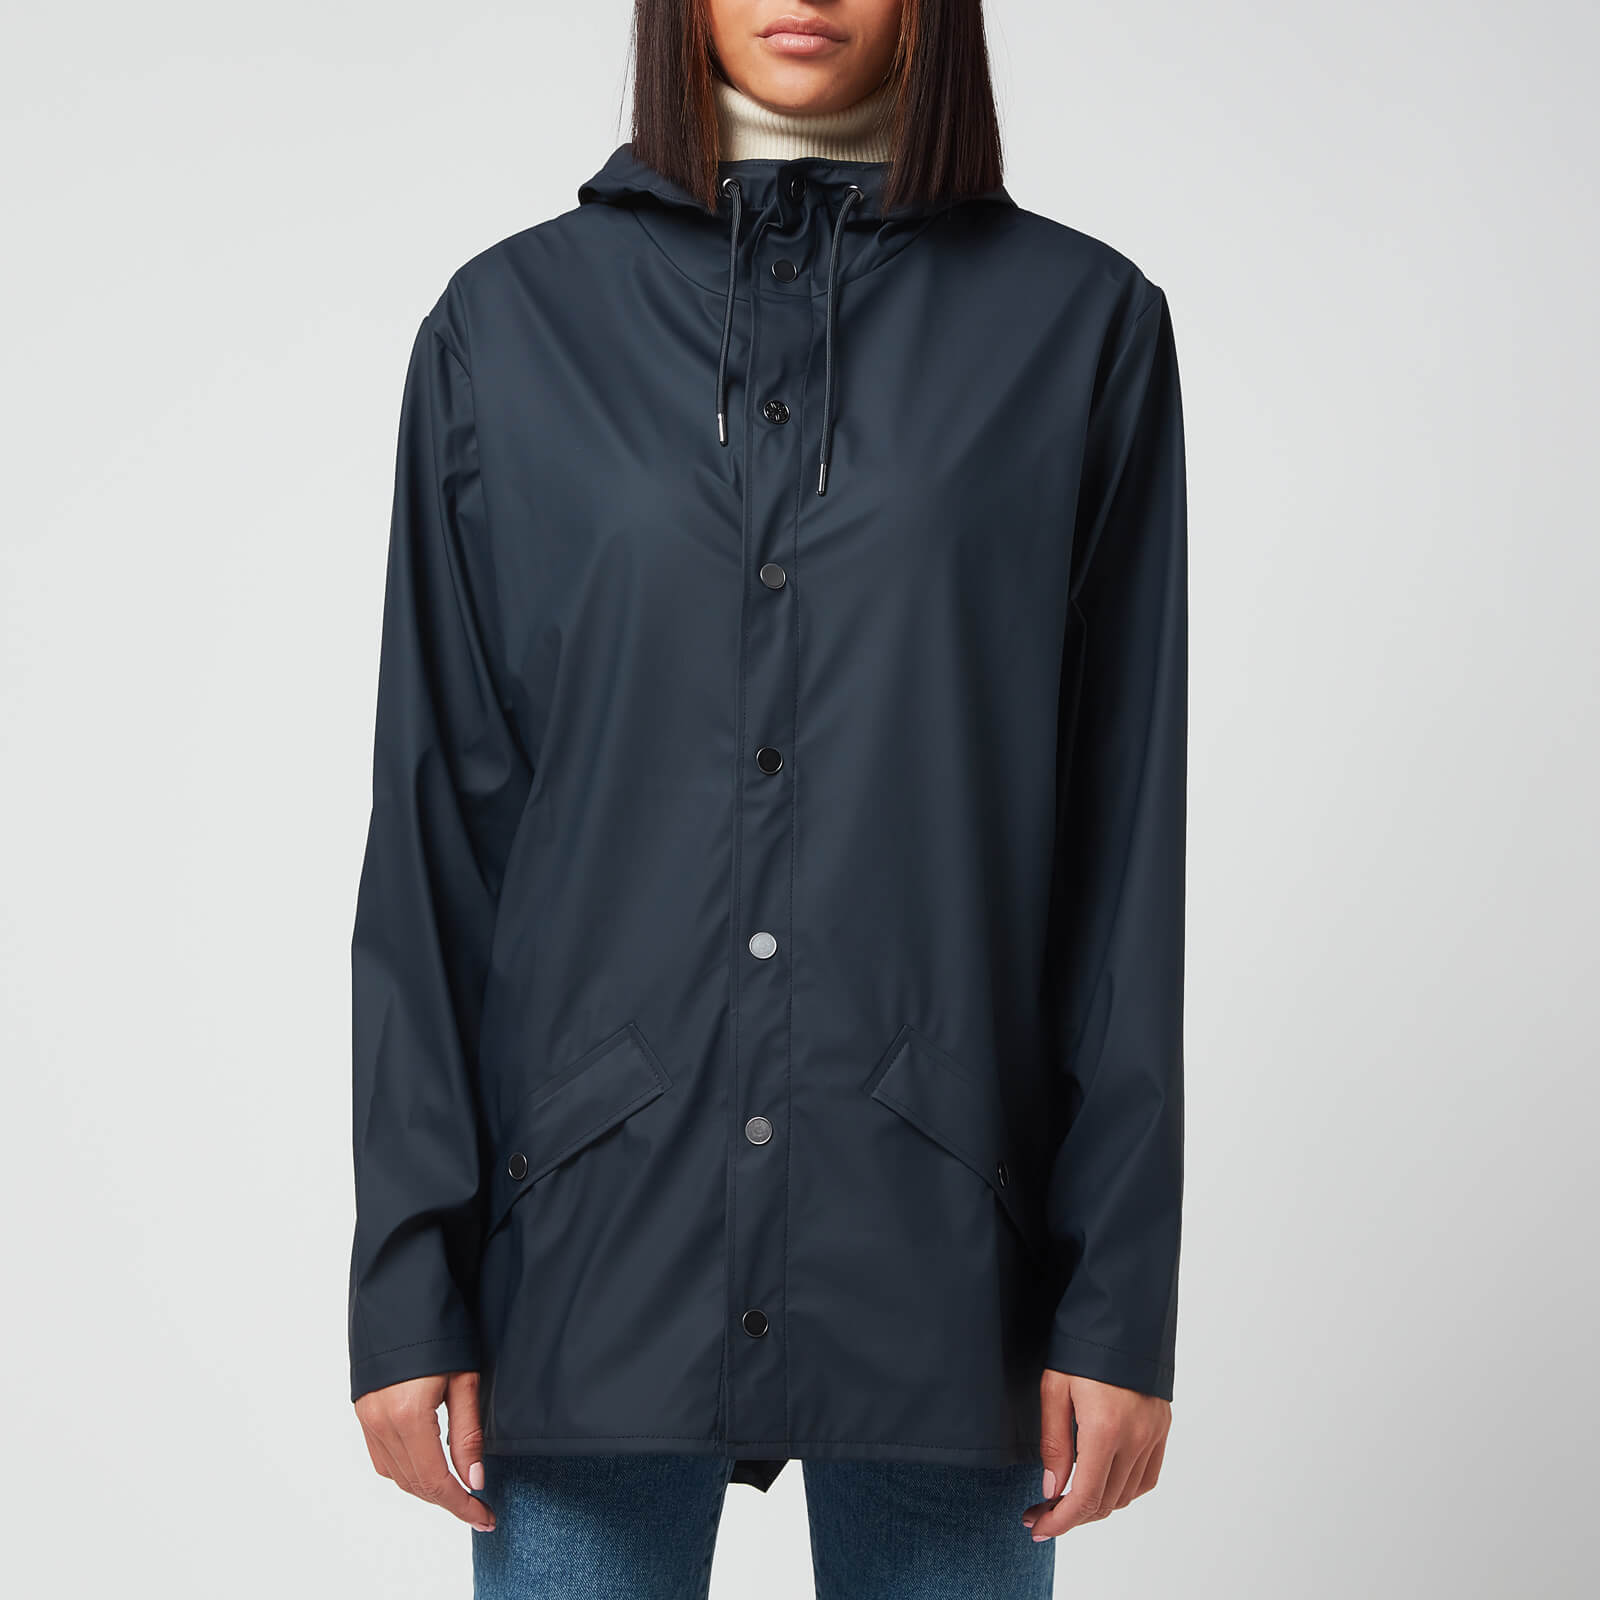 Rains Women's Jacket - Navy - XS